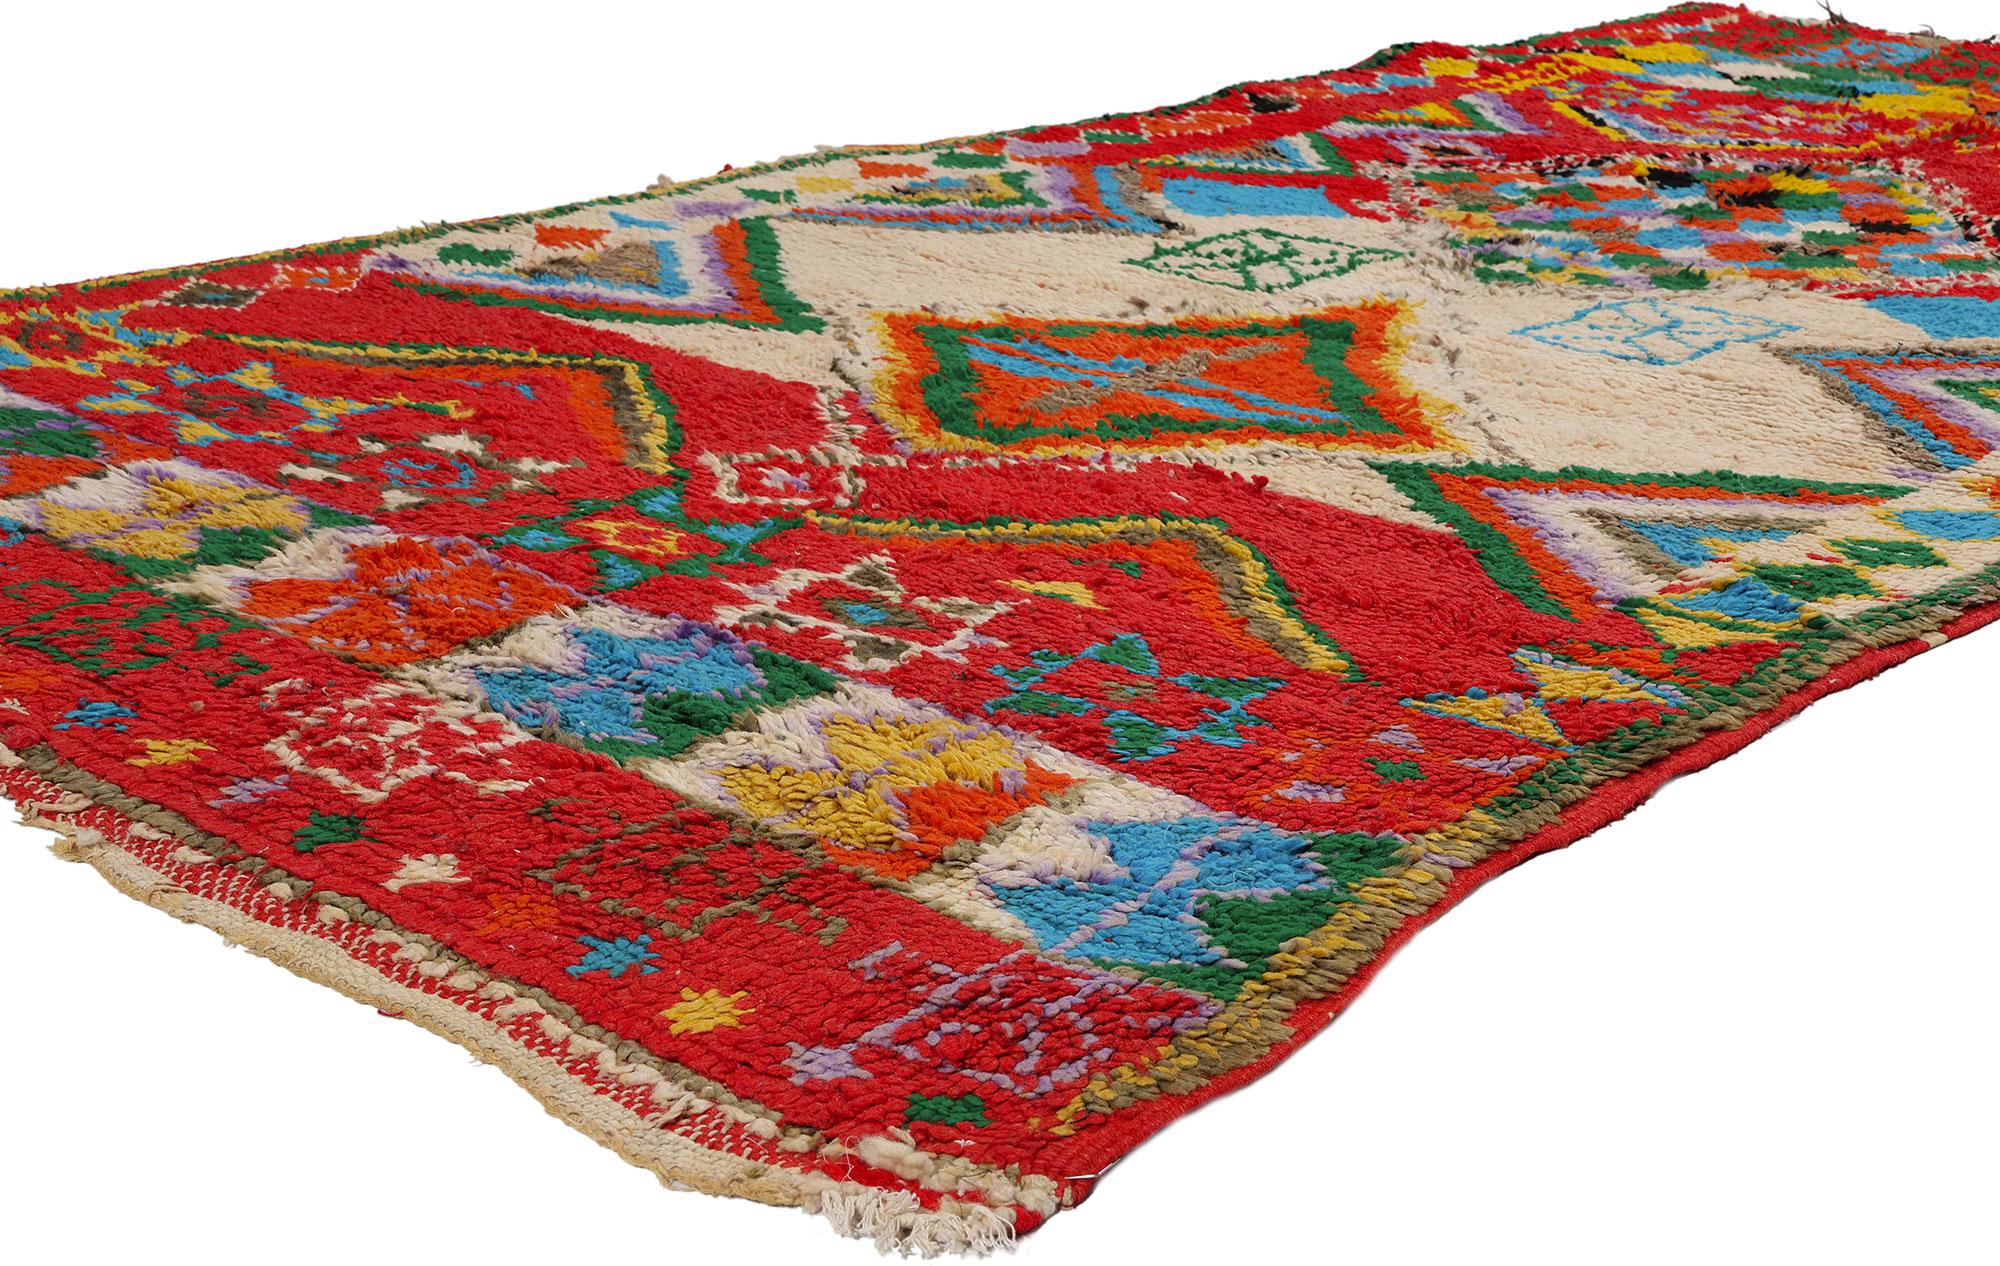 21790 Vintage Rot Boujad Marokkanischer Teppich, 04'08 x 07'08. Boujad-Teppiche, die aus der malerischen Region Boujad im Mittleren Atlasgebirge in Marokko stammen, sind geschätzte handgewebte Kostbarkeiten, die von jahrhundertealten Traditionen